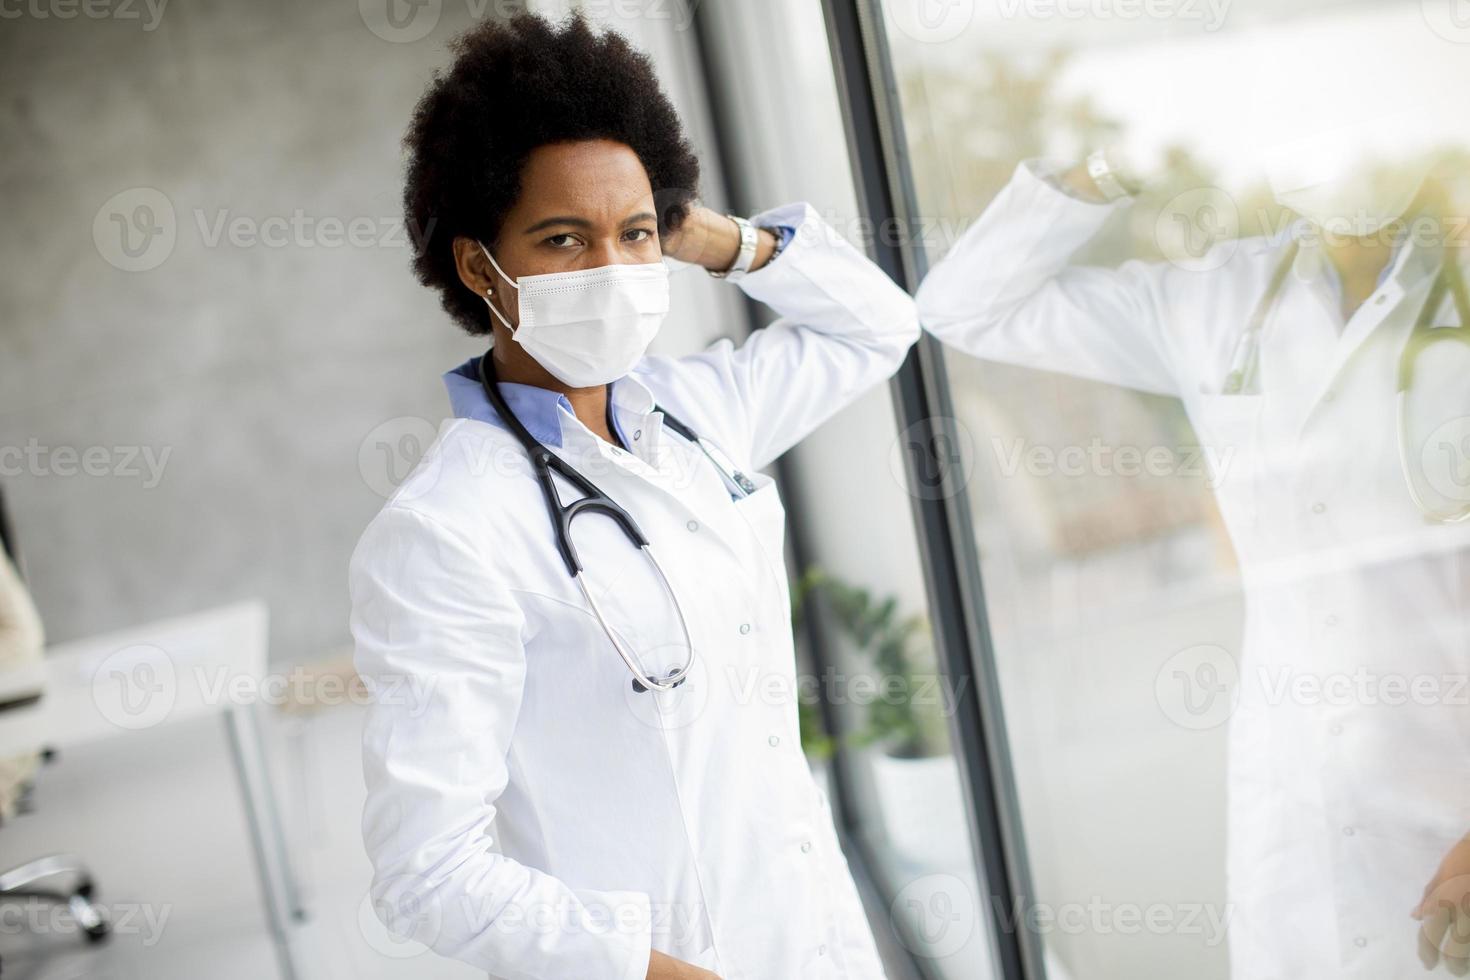 Doktor mit Maske, die sich gegen Fenster lehnt und Kamera betrachtet foto